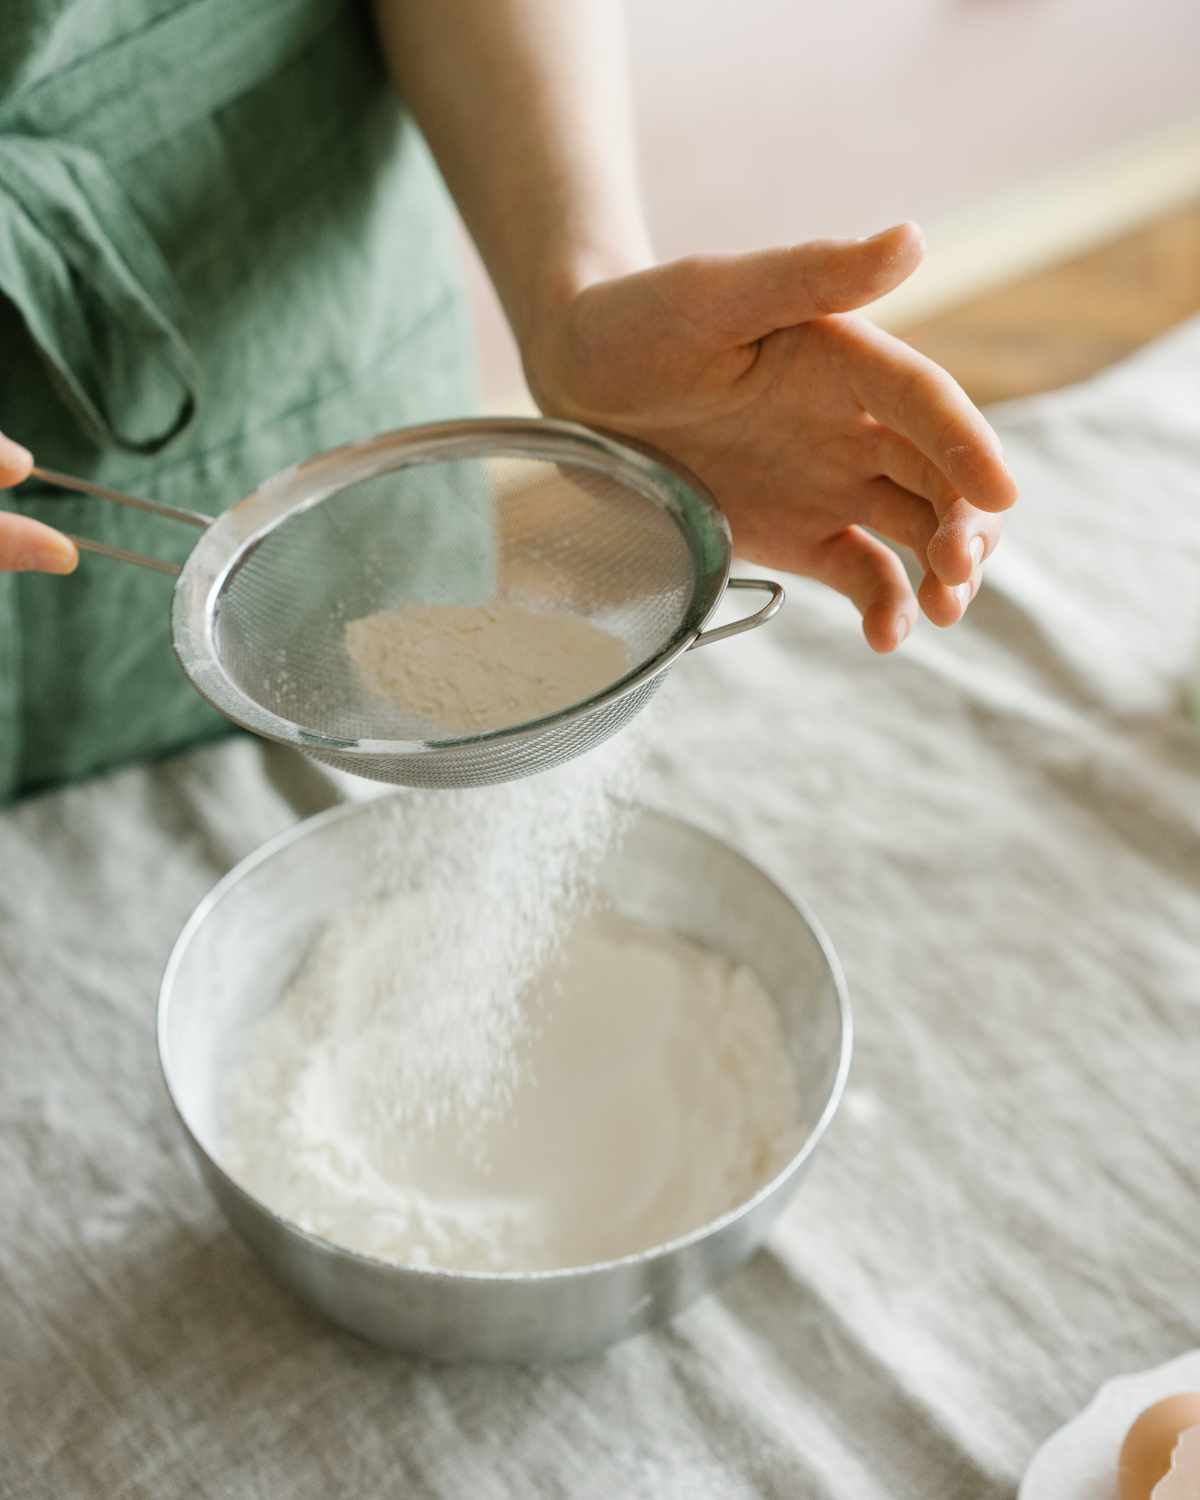 A woman sifting baking powder.